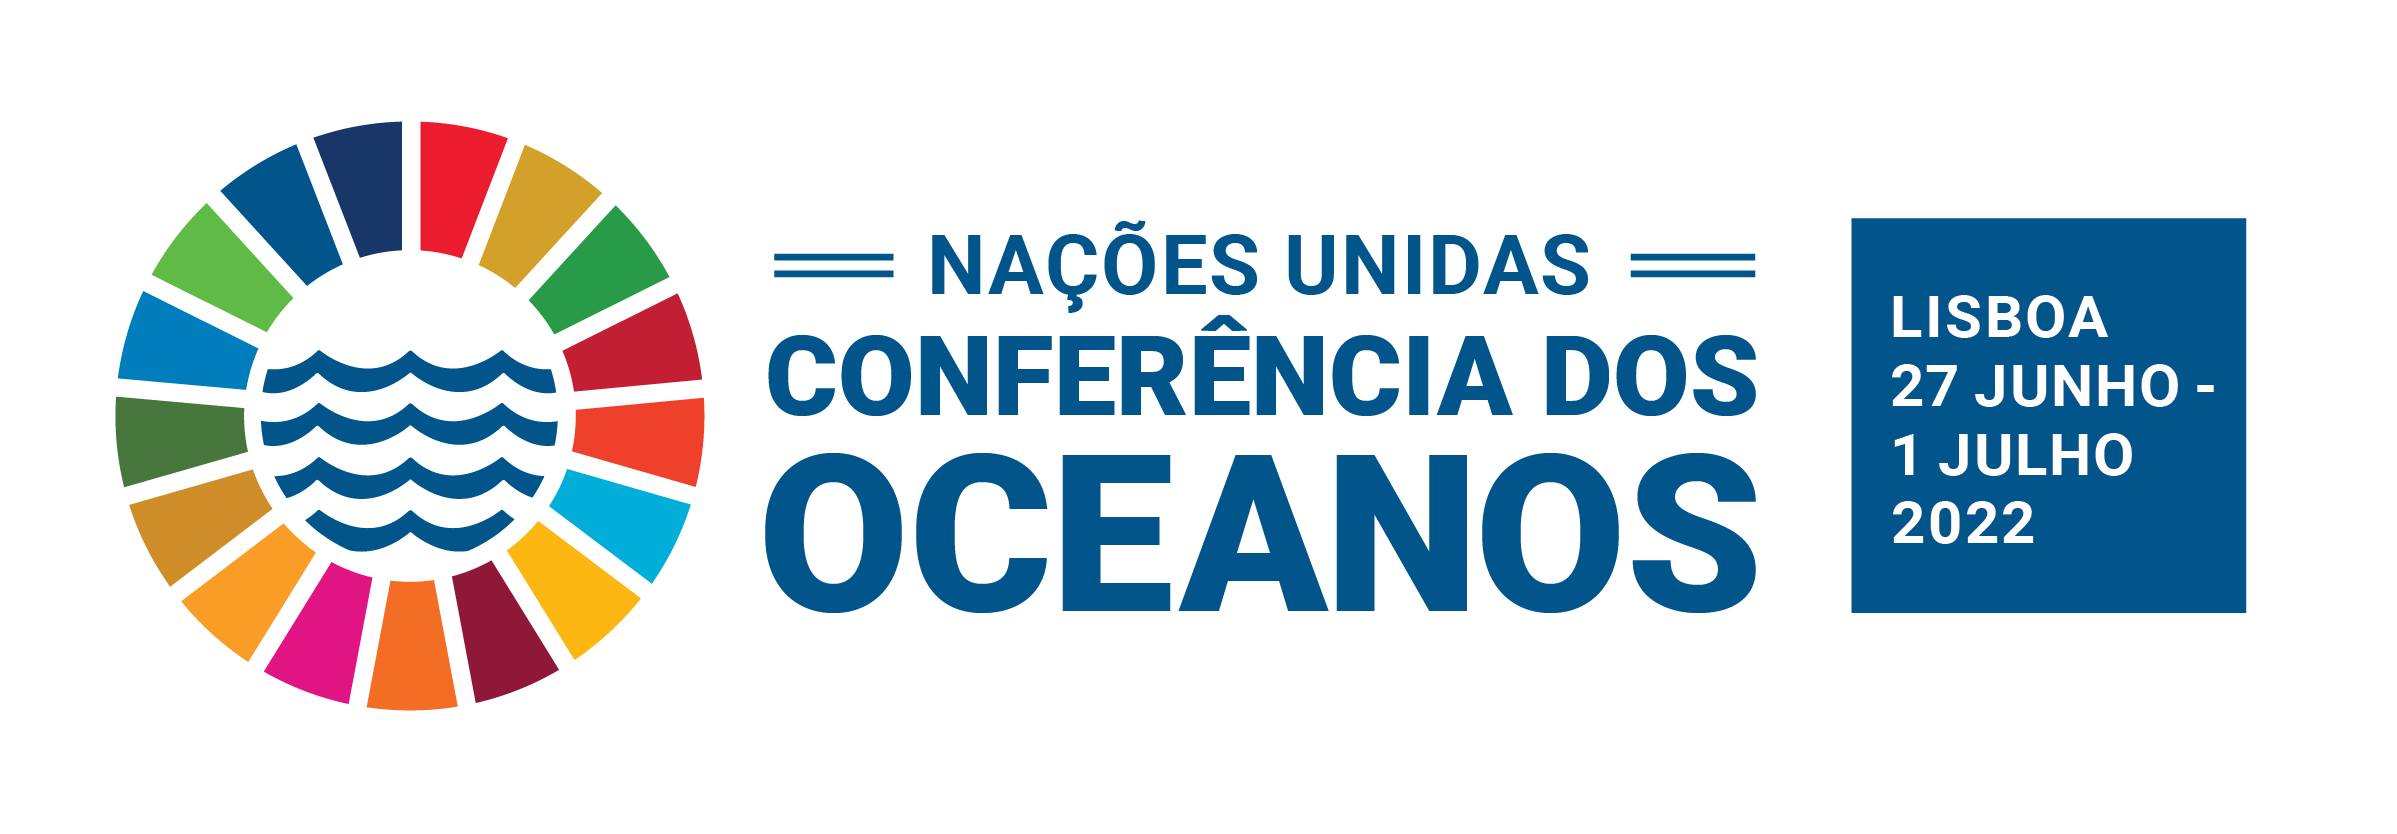  Contagem decrescente para a Conferência dos Oceanos da ONU 